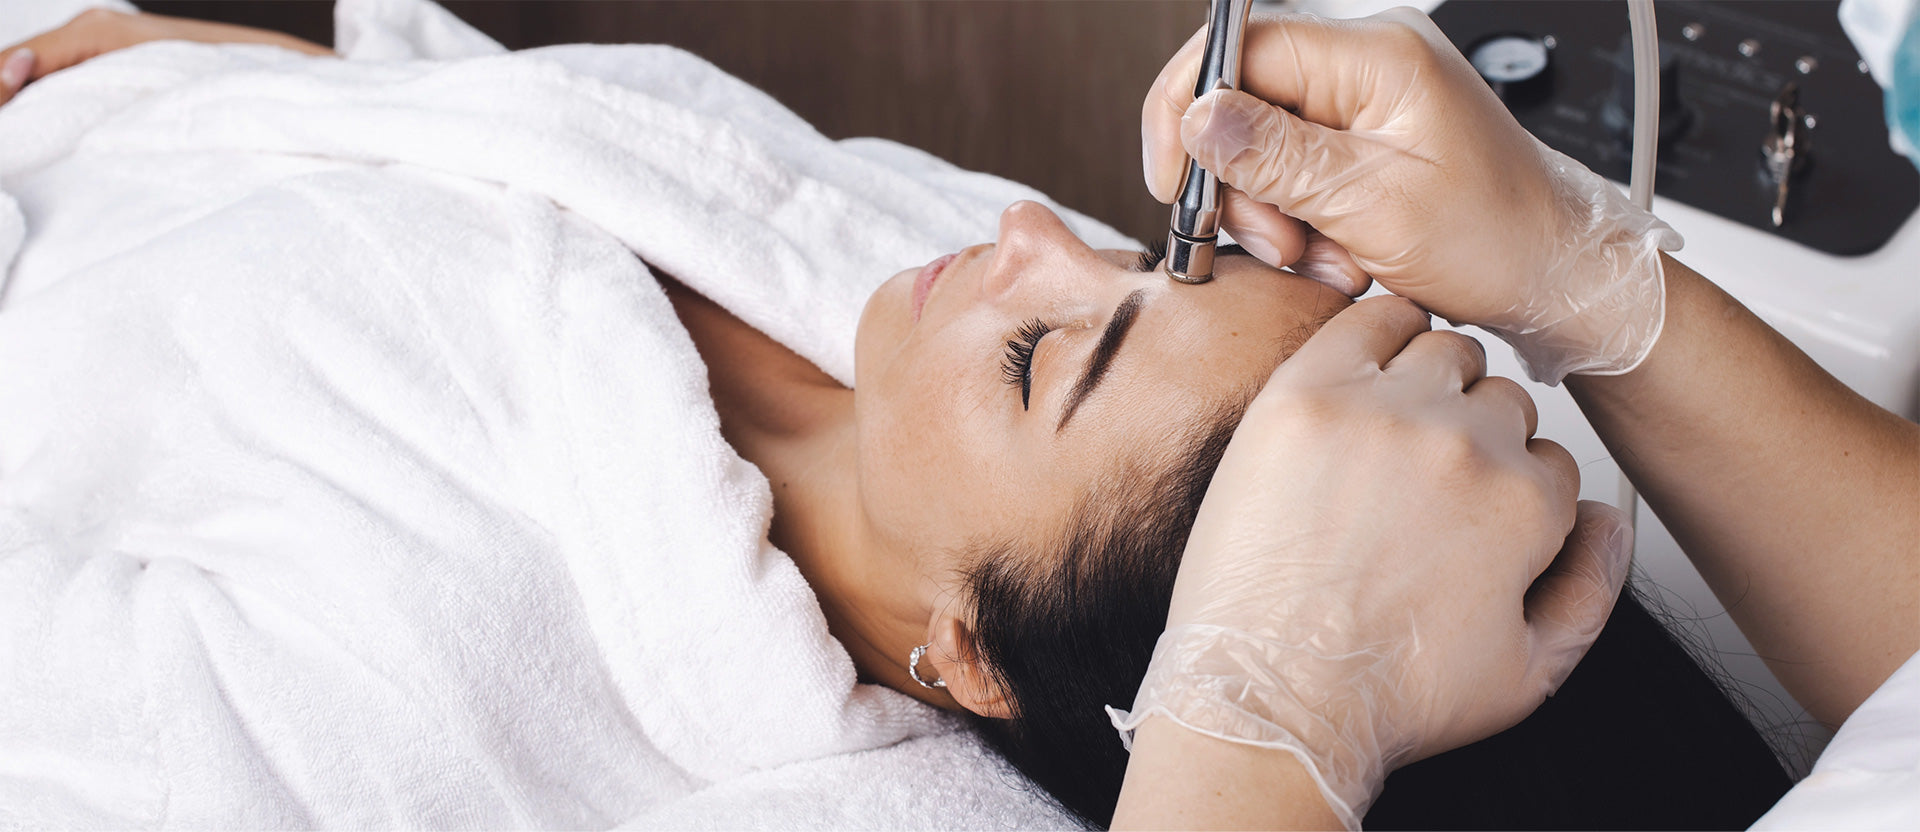 skin treatment boosting skin health and radiance